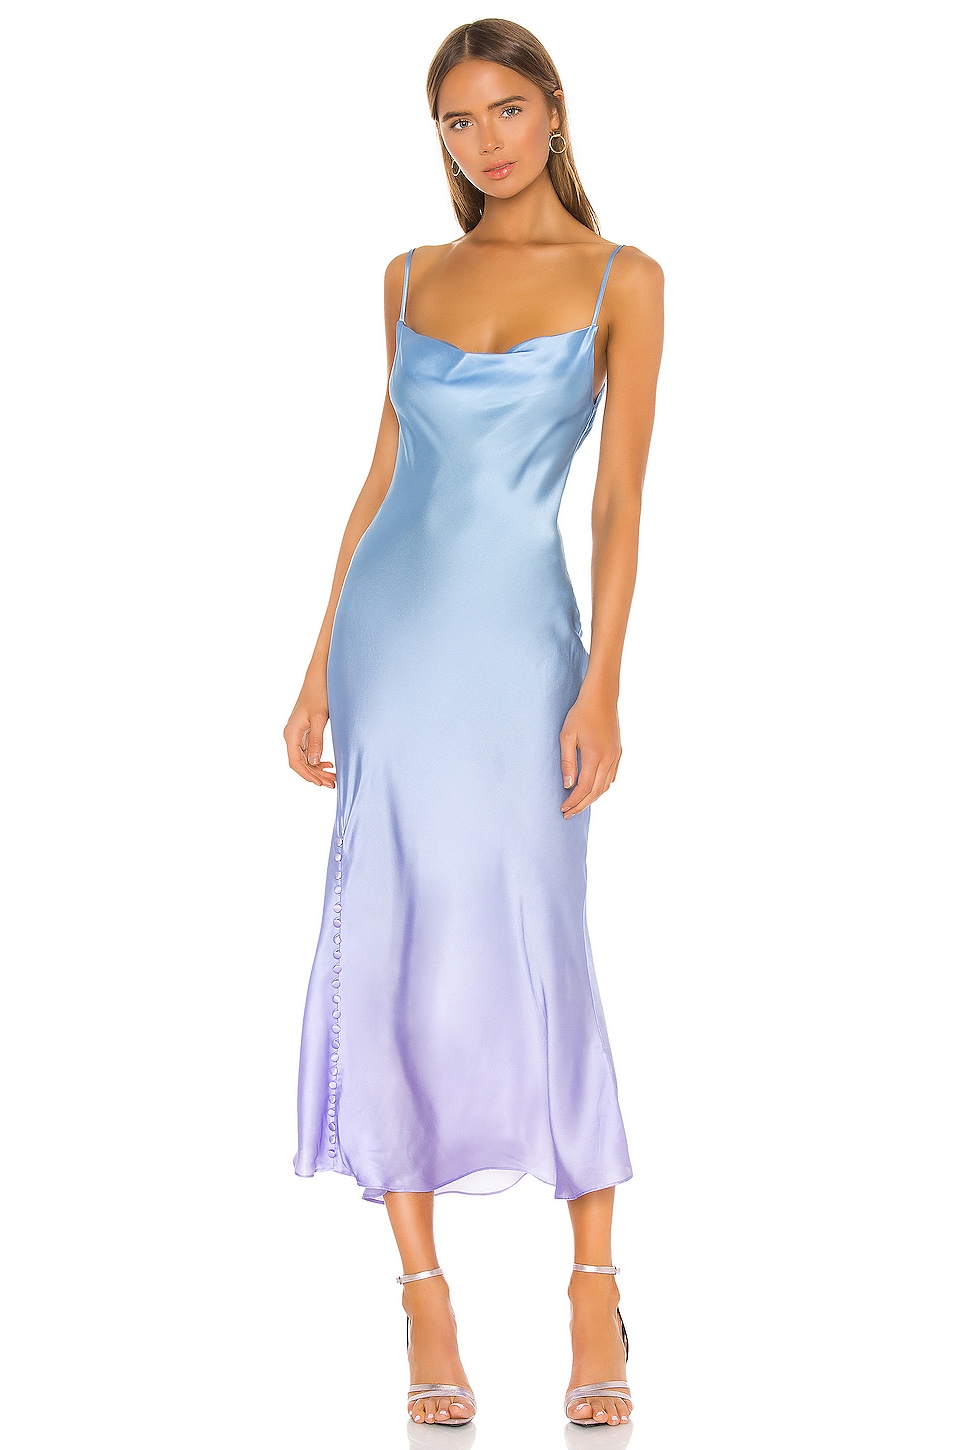 long blue slip dress